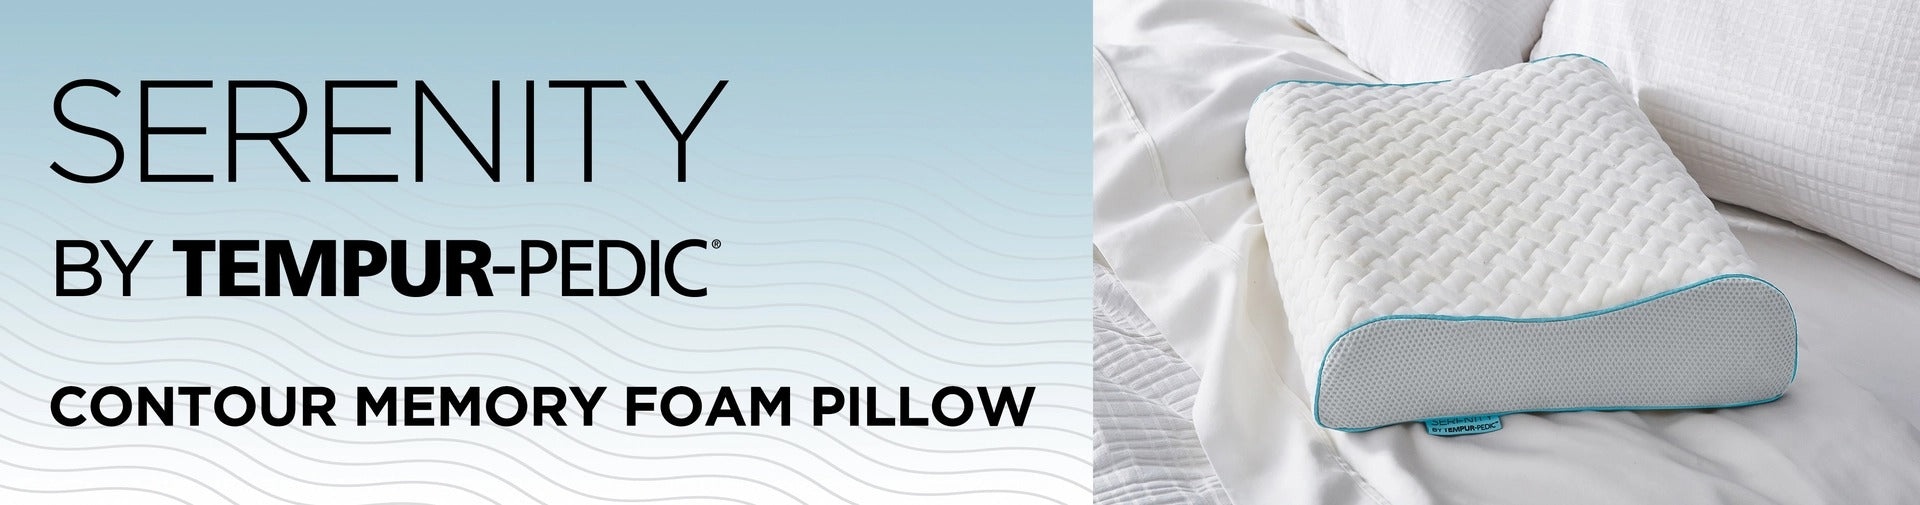 Tempur-Pedic Serenity Contour Memory Foam Pillow, 20